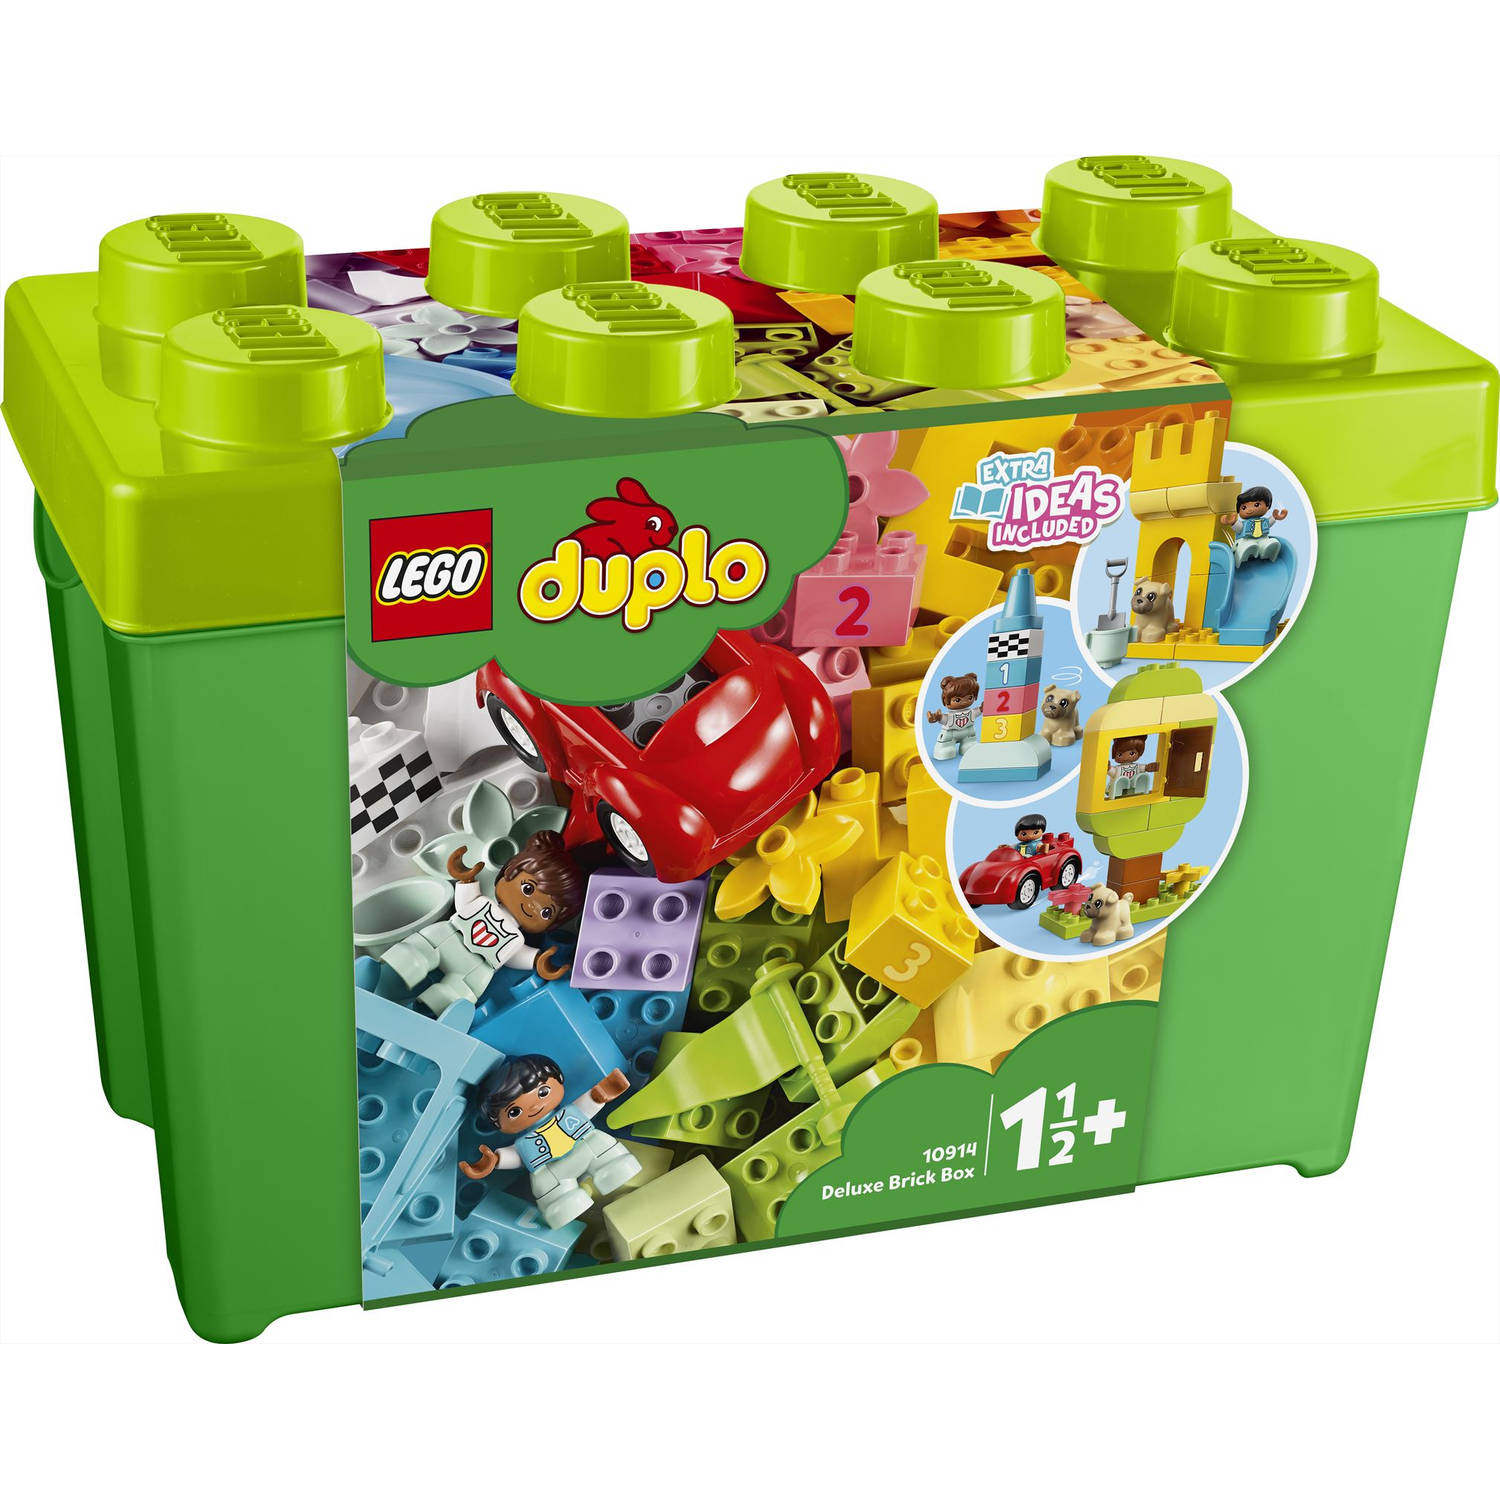 Lego 10914 Duplo Deluxe Brick Box